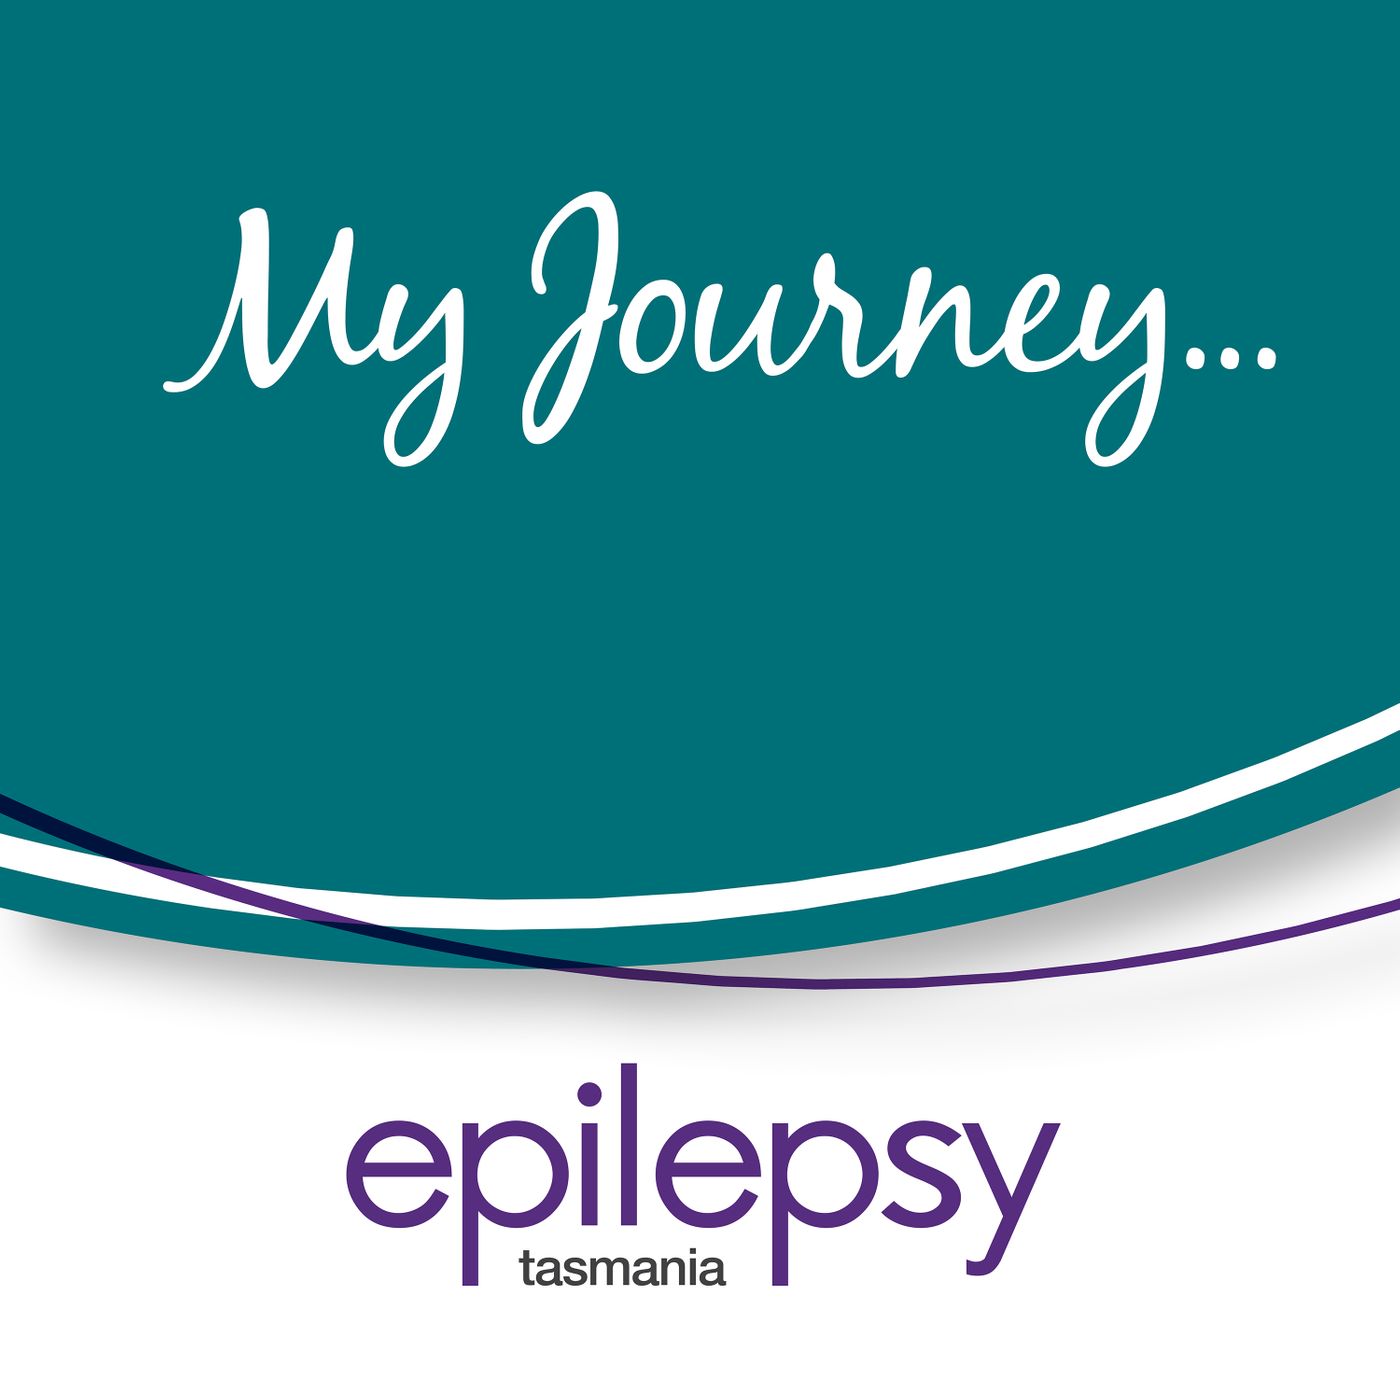 My Journey with Epilepsy Tasmania